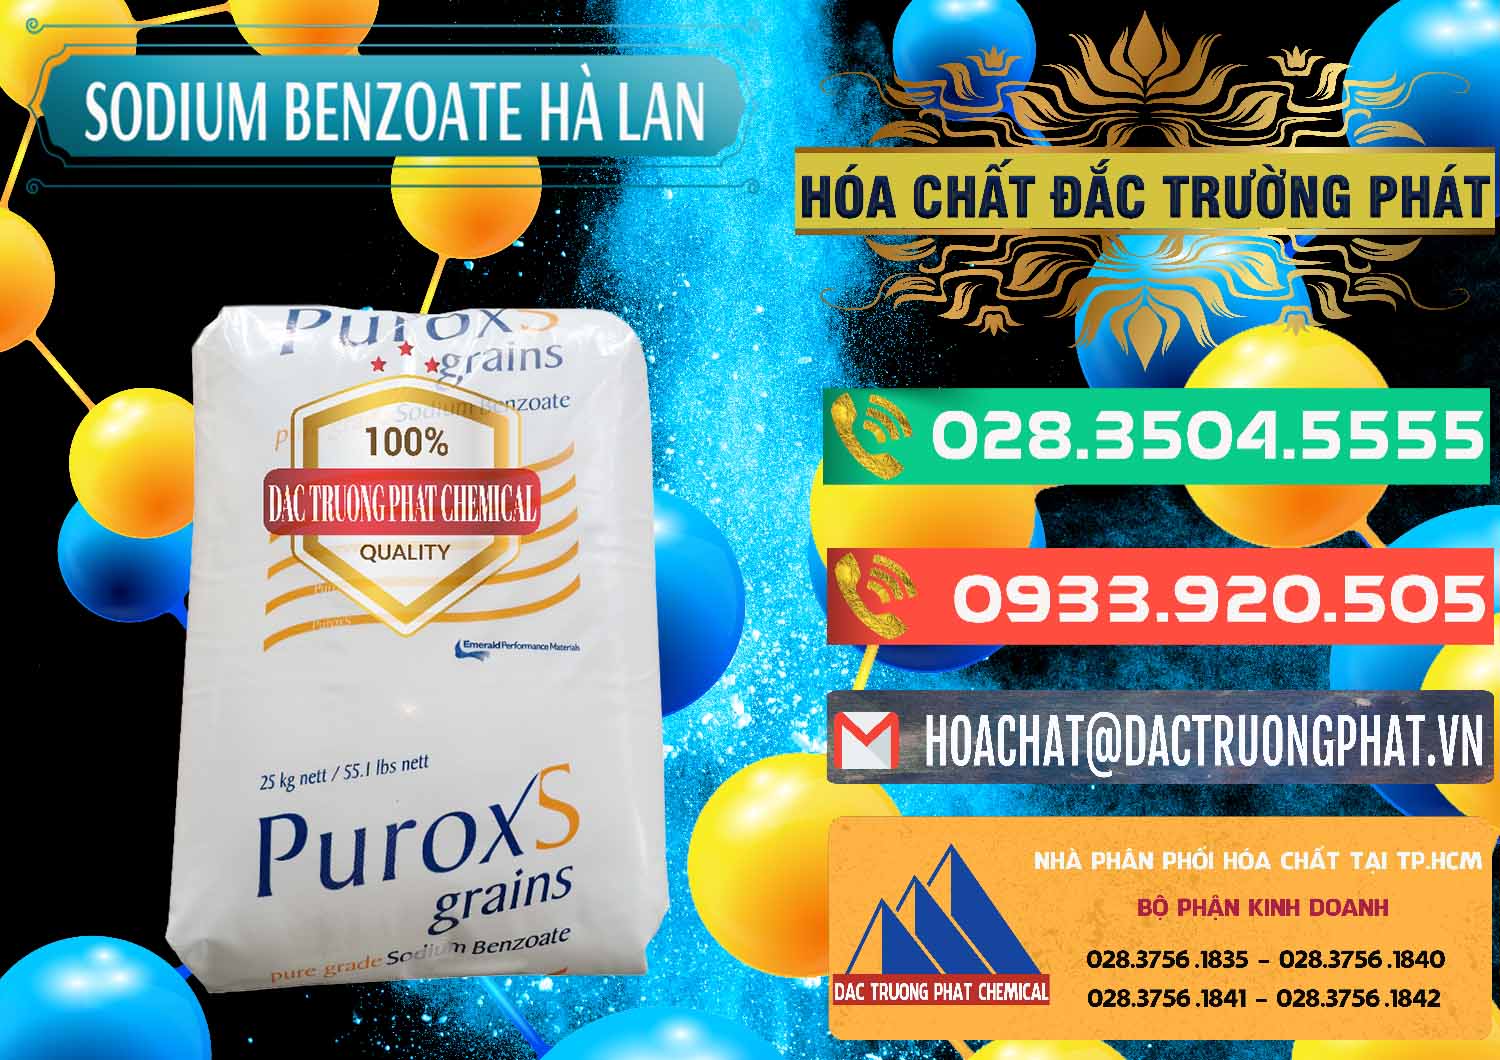 Nơi chuyên cung ứng và bán Sodium Benzoate - Mốc Bột Puroxs Hà Lan Netherlands - 0467 - Cty phân phối ( cung ứng ) hóa chất tại TP.HCM - congtyhoachat.com.vn